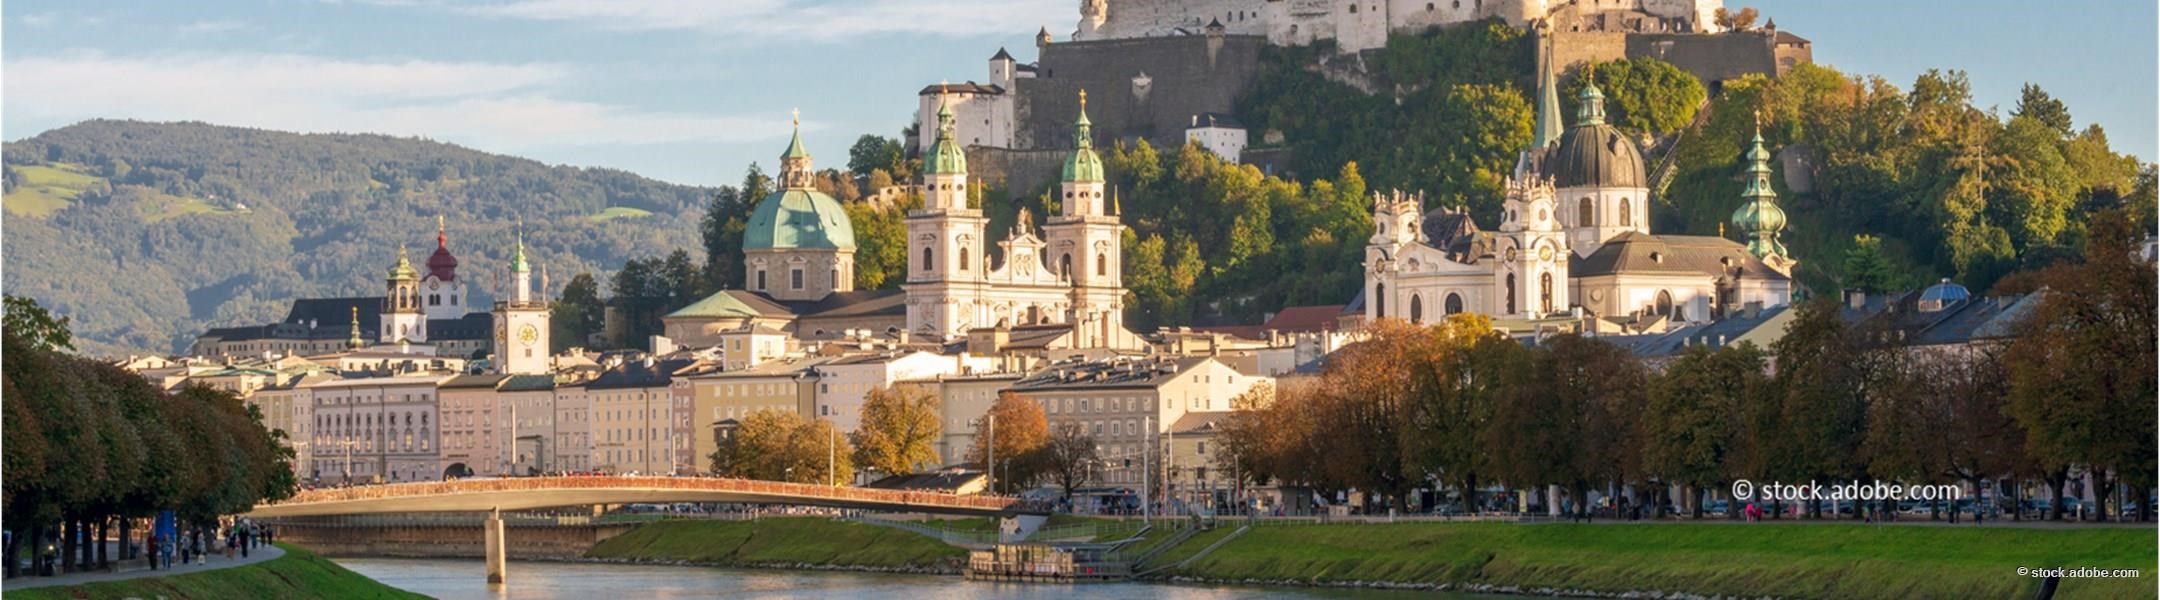 Landeshauptstadt Salzburg 